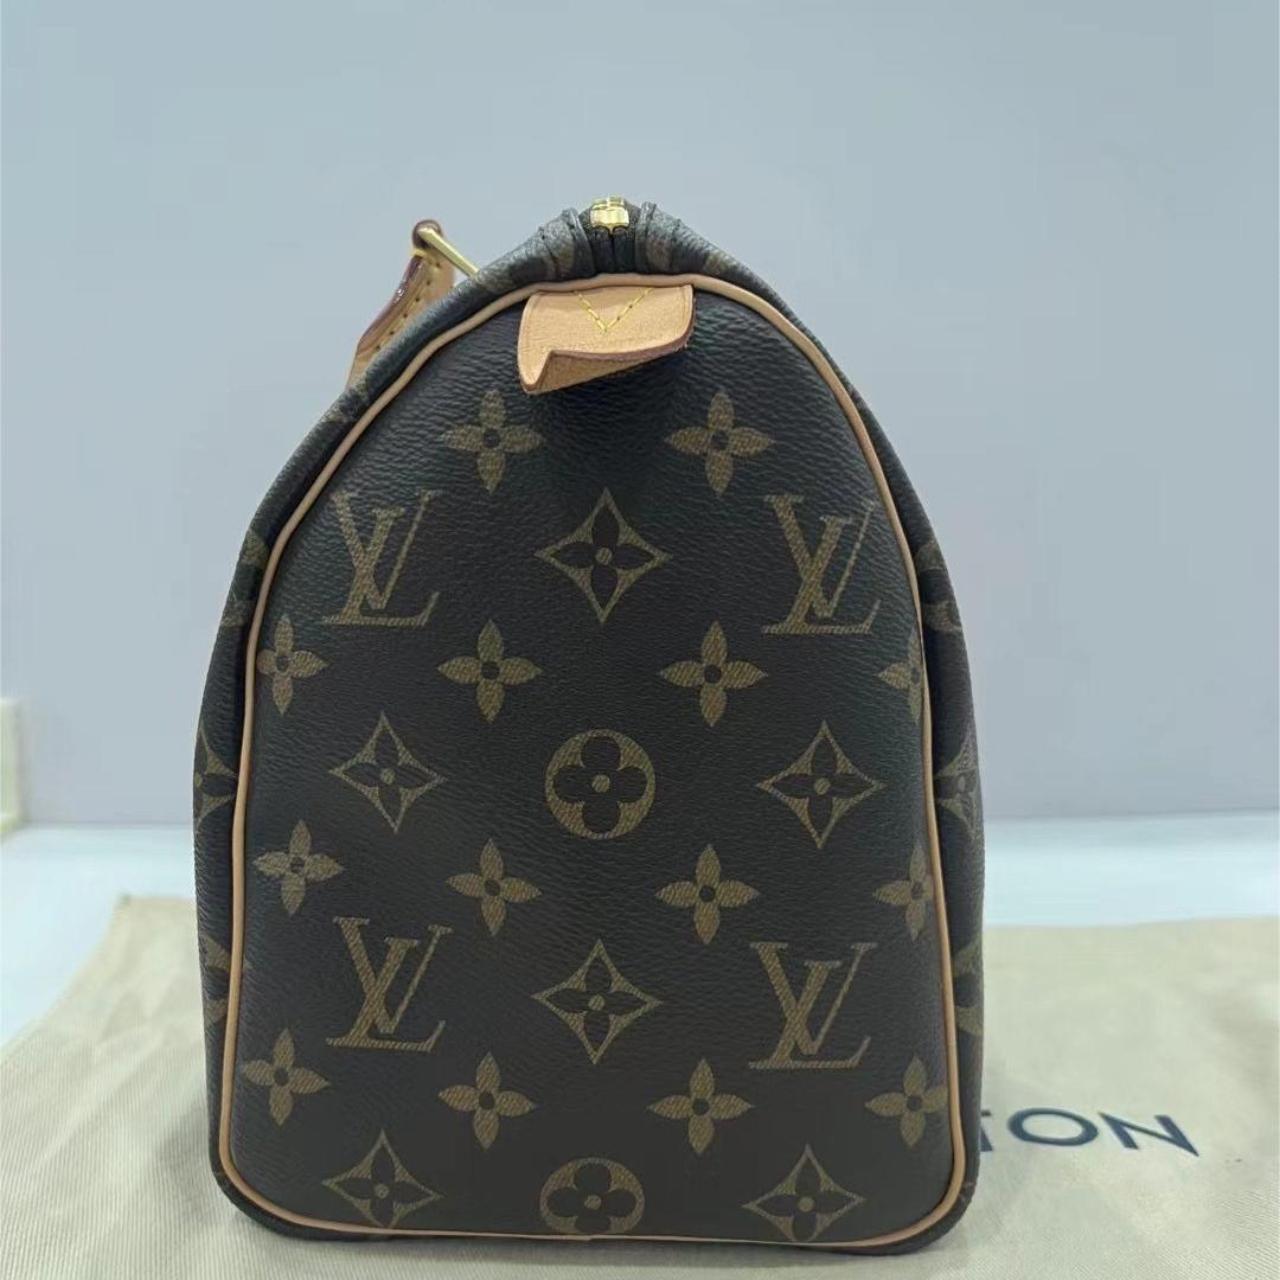 Louis Vuitton speedy 25 bag Authentic LV bag - Depop